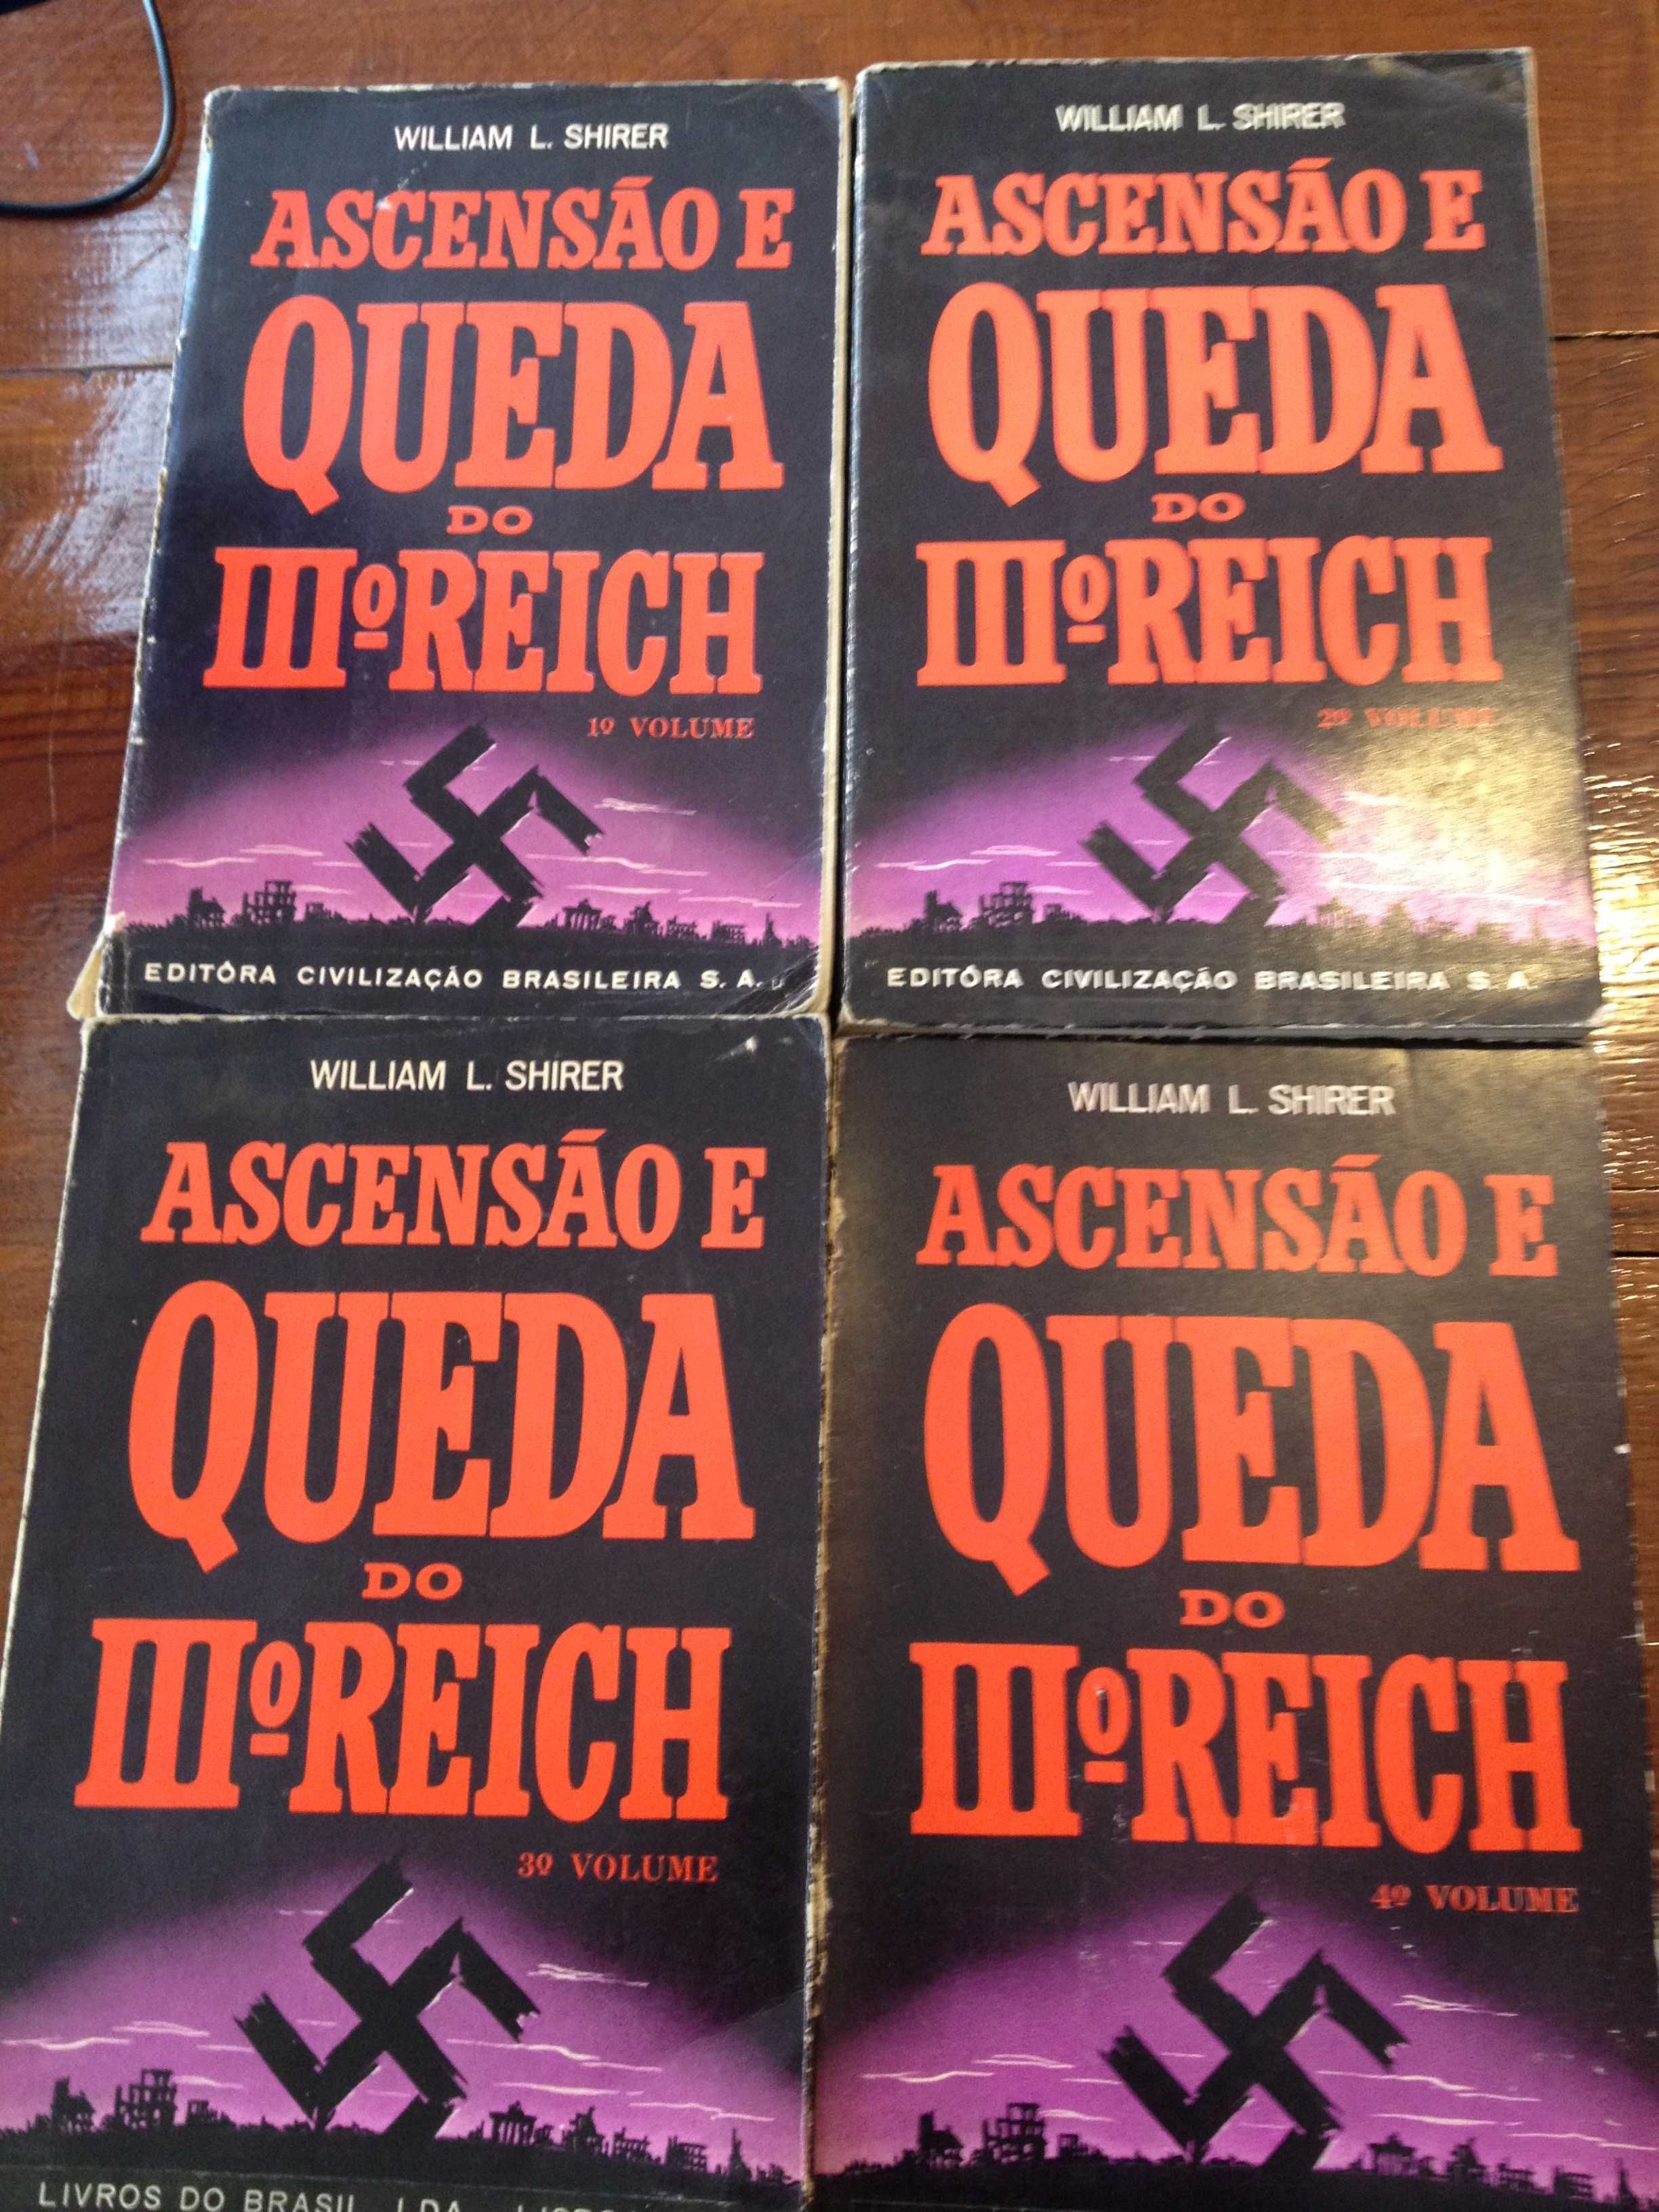 William L. Shirer - Ascensão e queda do IIIº Reich (4 vols.)